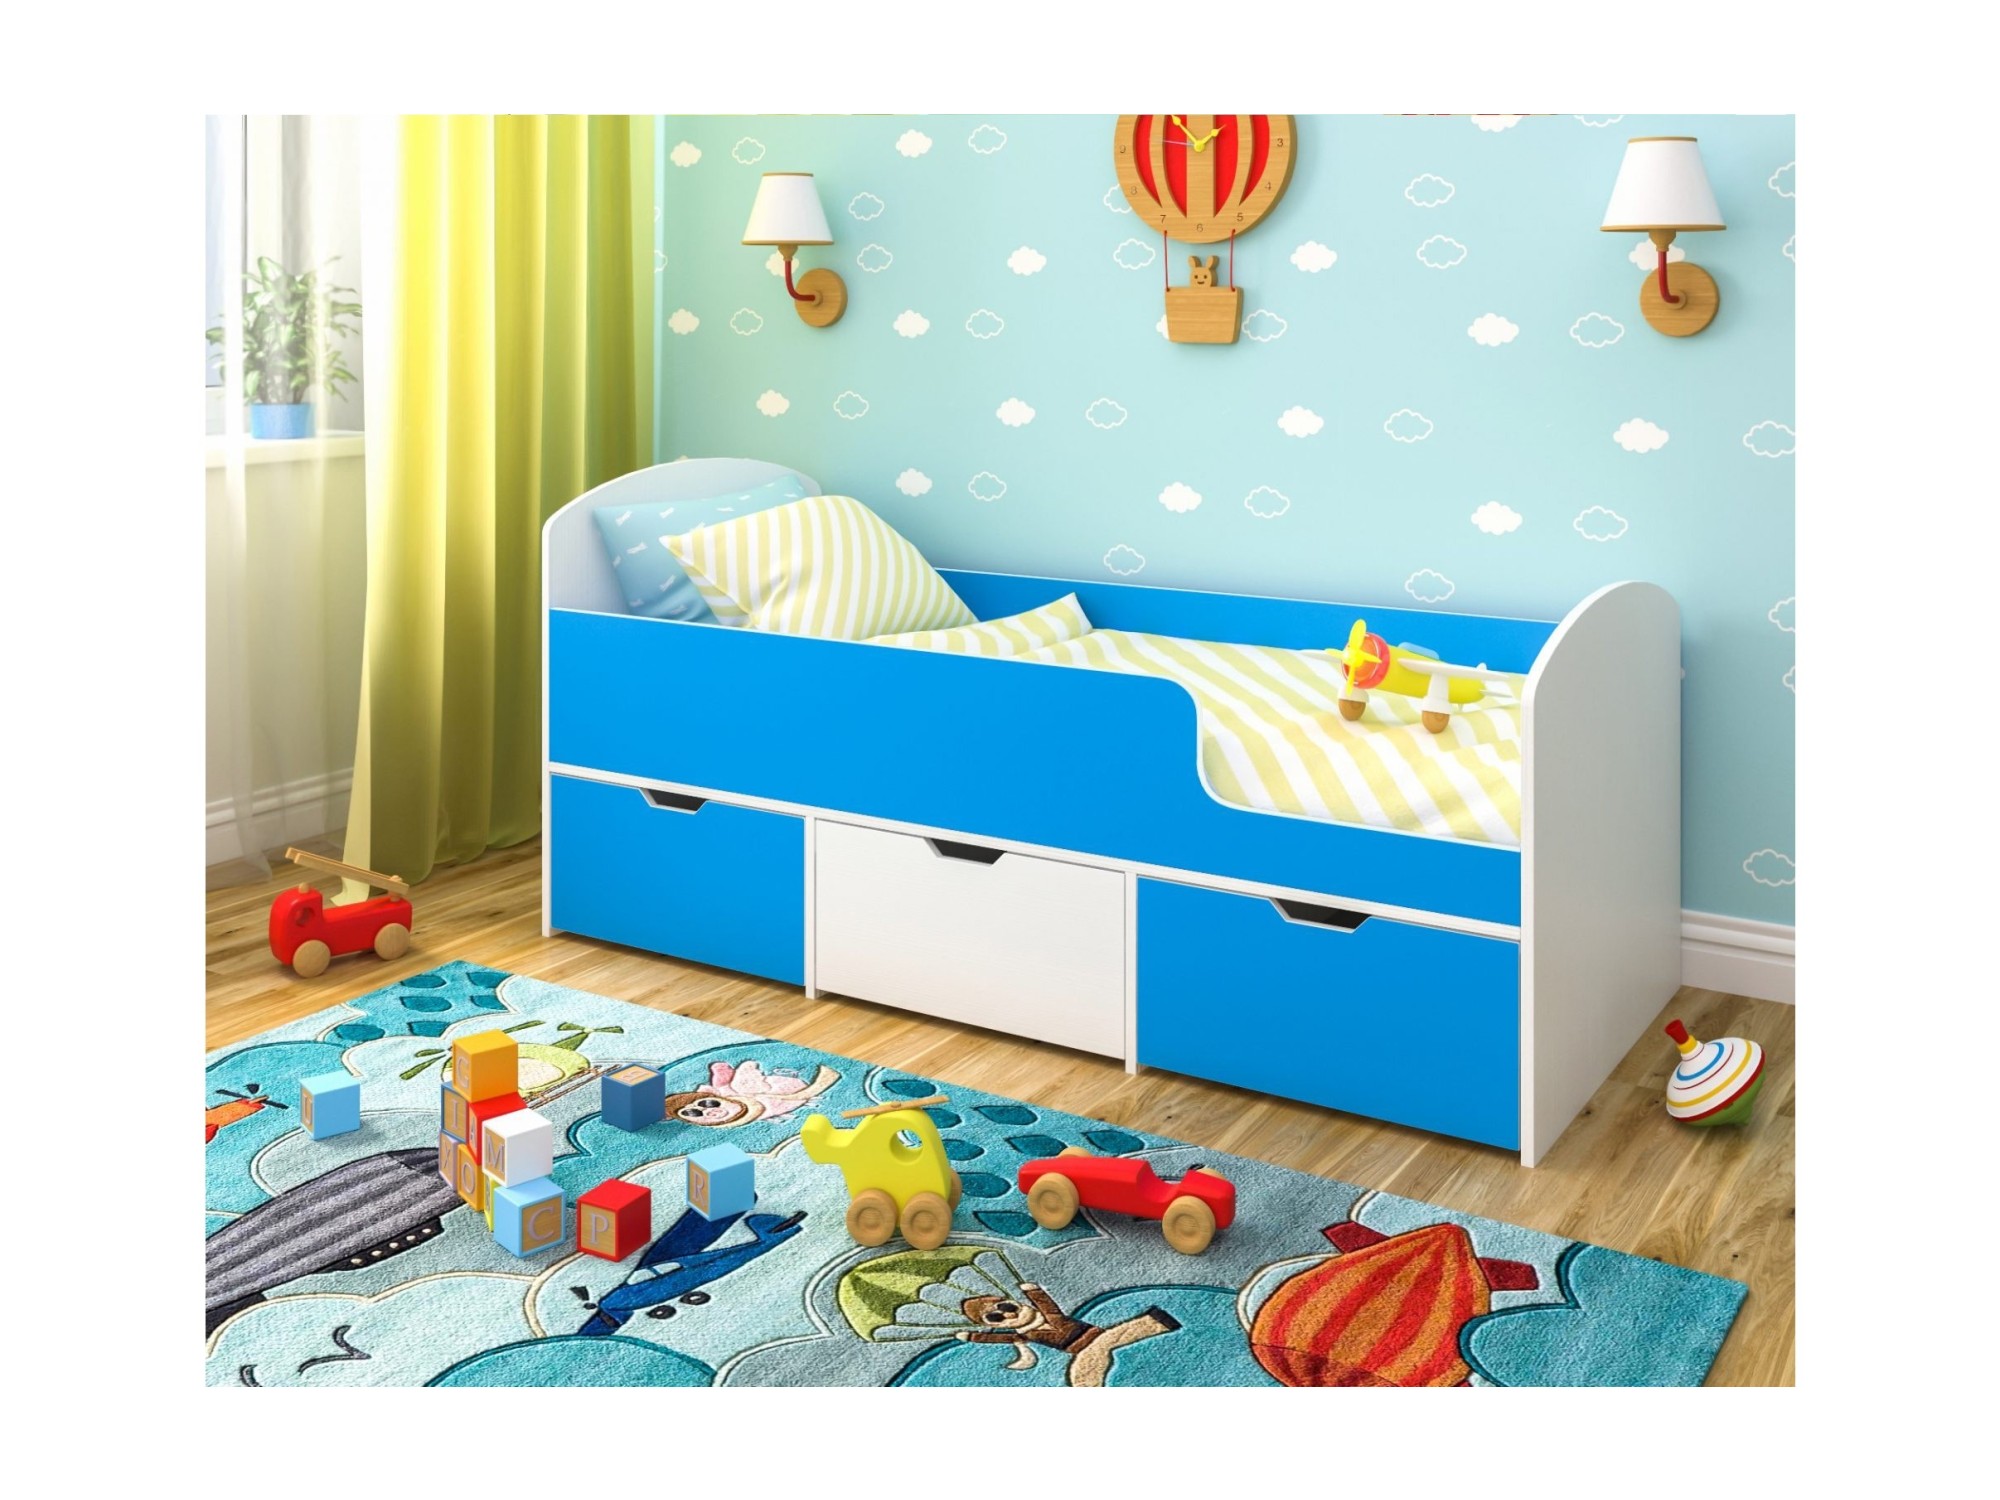 Кровать Малыш Мини (Белое дерево, Голубой) Голубой, ЛДСП соня штора на полувысокую кровать 1910х1000 810х1000 голубой голубой